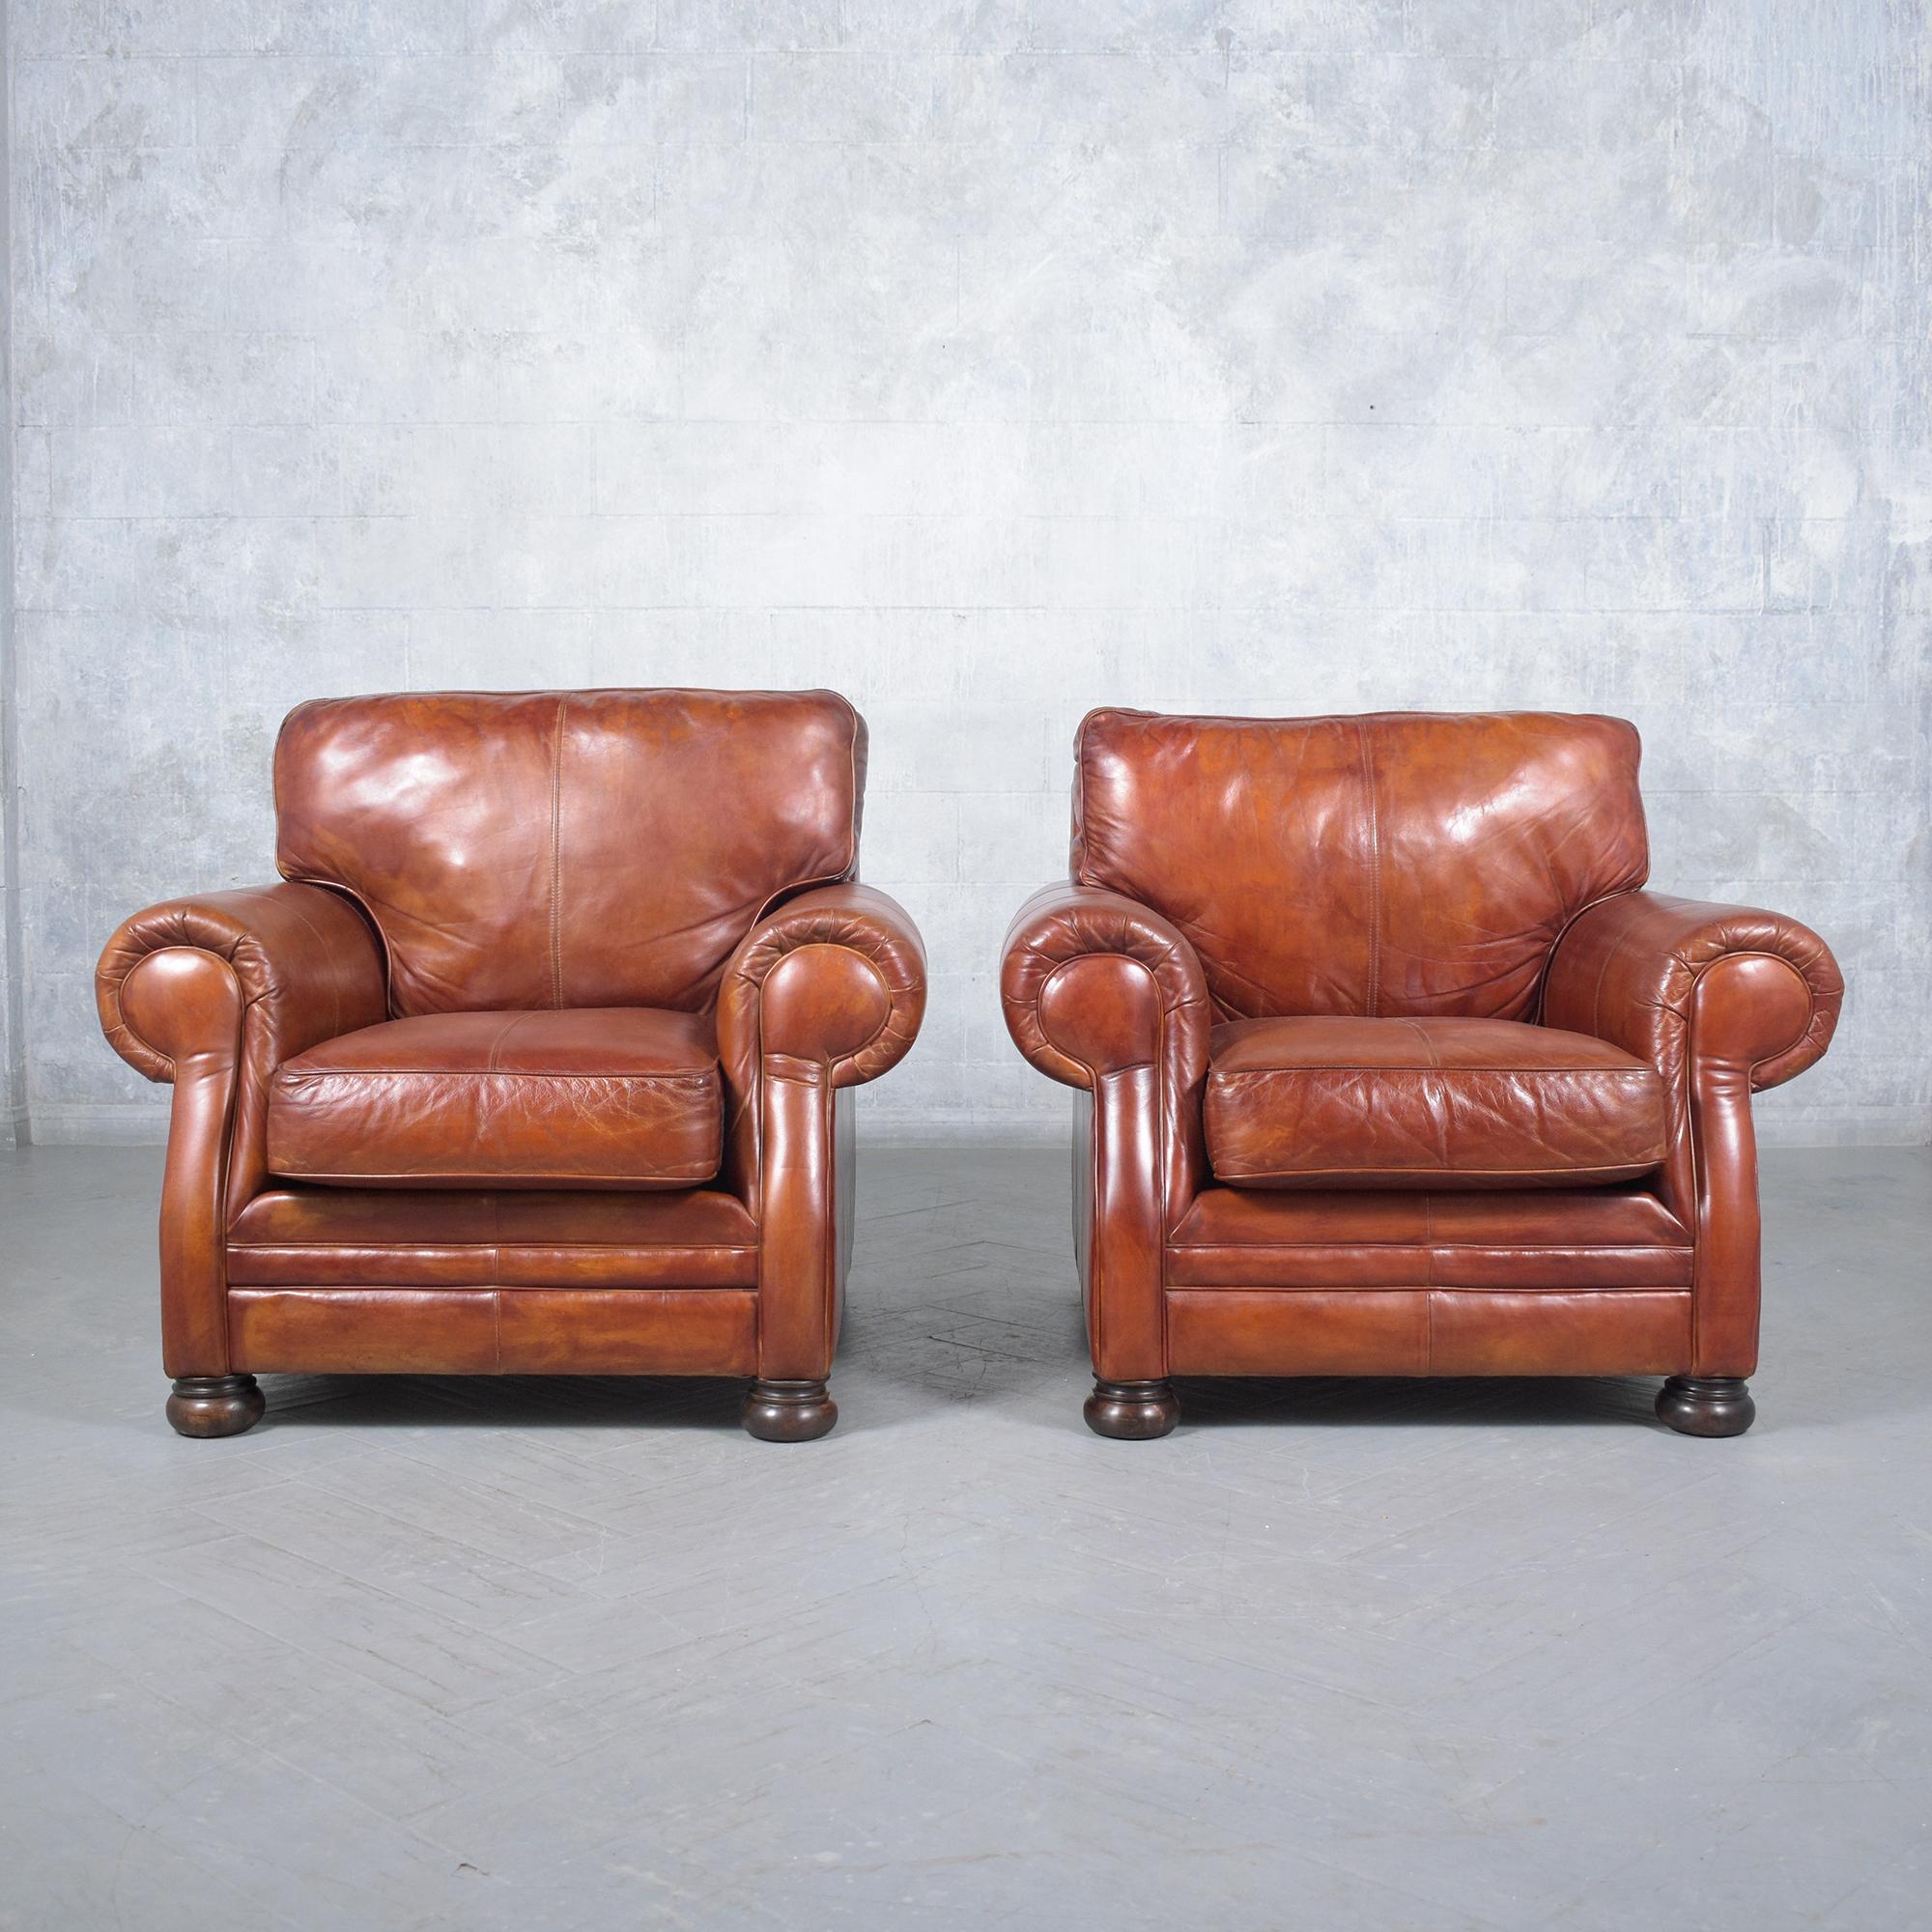 Découvrez le charme inégalé de notre paire de fauteuils vintage en cuir, magnifiquement fabriqués et méticuleusement restaurés par notre équipe d'artisans professionnels experts. Ces fauteuils club vintage témoignent d'un design intemporel et d'un